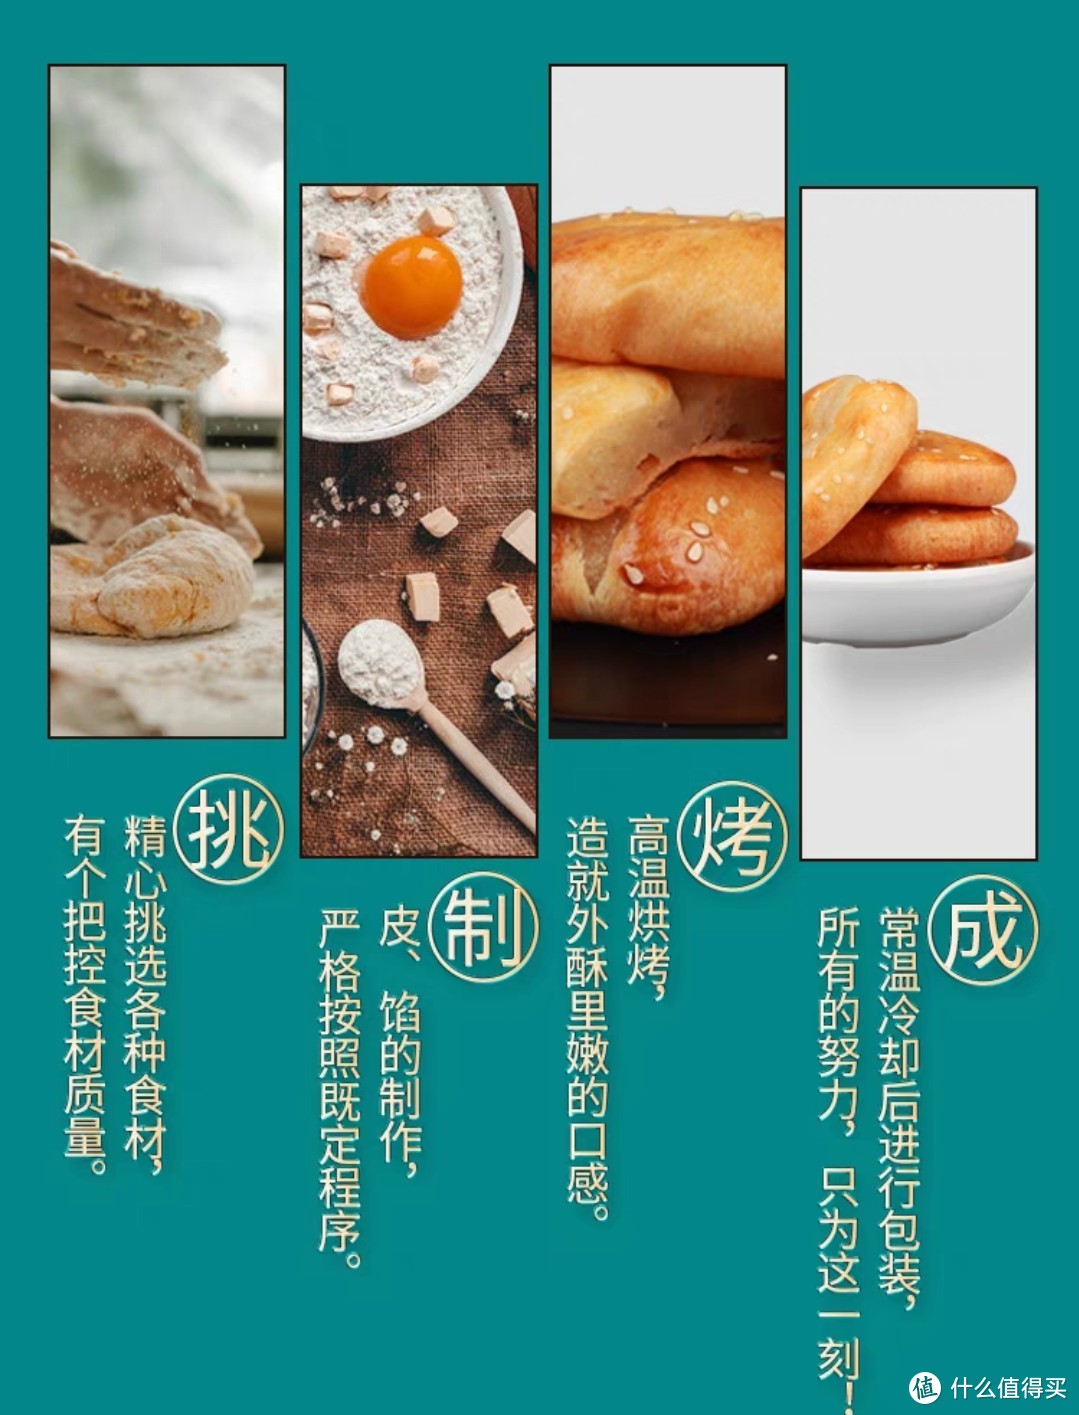 乐盟红豆老婆糯米饼馅早餐零食广东特产正宗传统糕点面包食品整箱